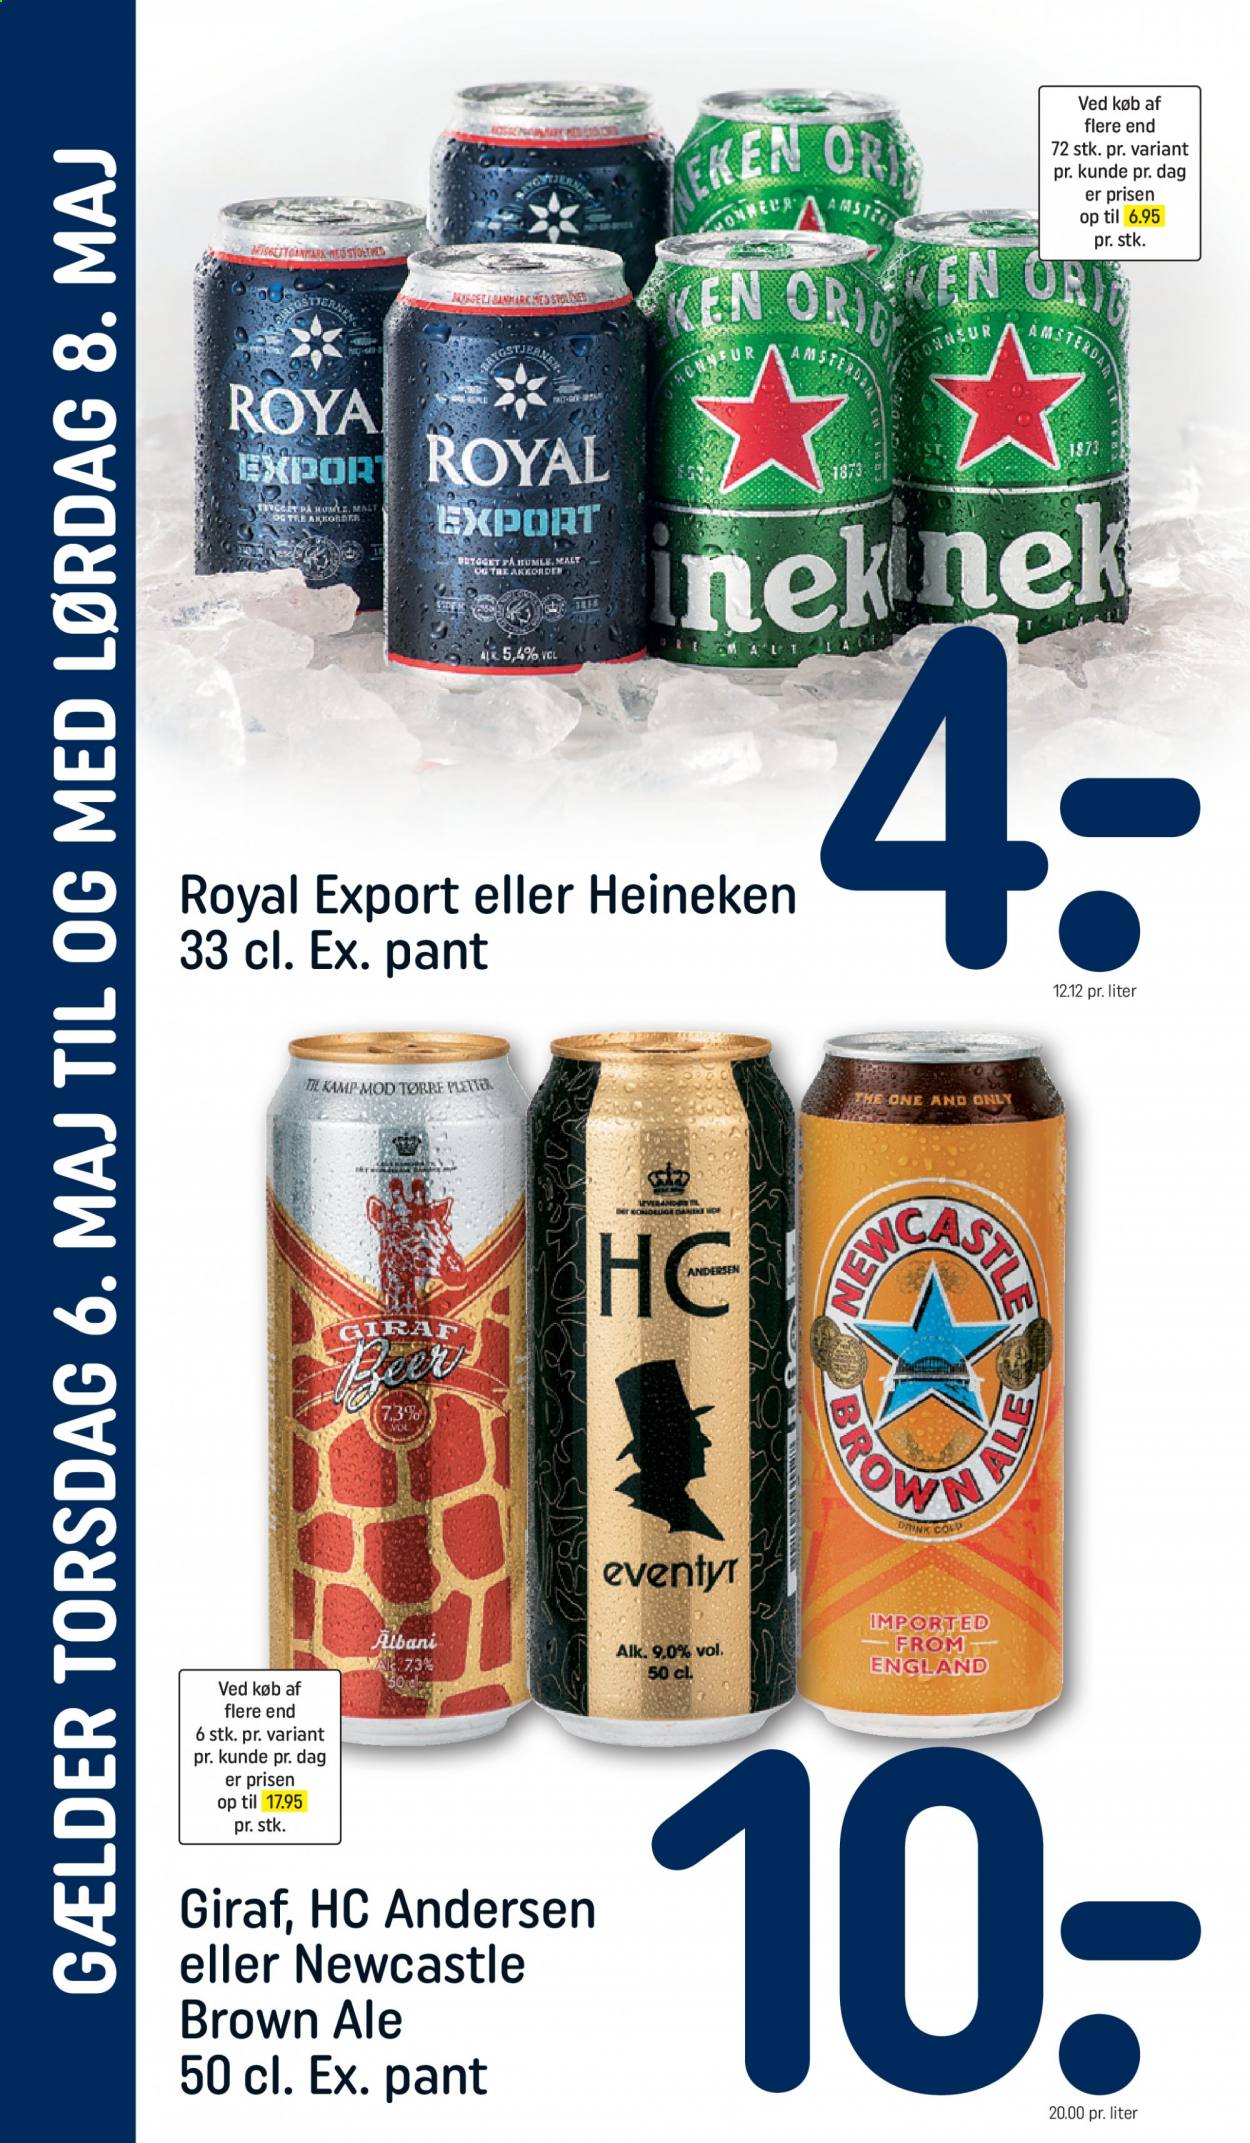 thumbnail - Rema 1000 tilbud  - 6.5.2021 - 8.5.2021 - tilbudsprodukter - brown ale, Heineken. Side 3.